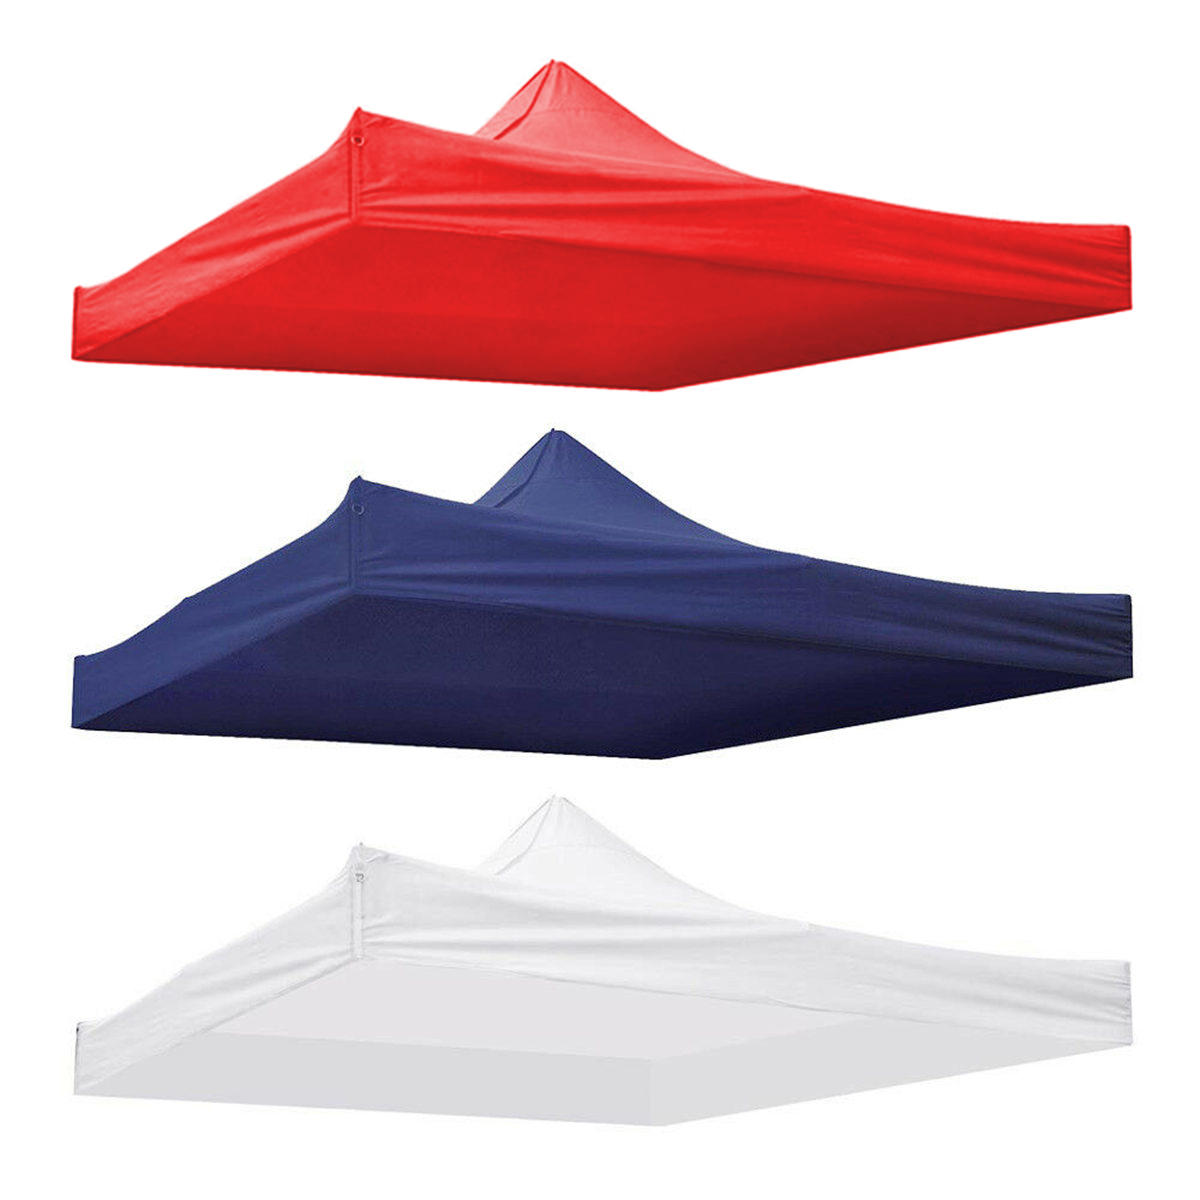 ançais: Toit de remplacement étanche de 9,5x9,5 pieds pour tente de patio ou gazebo avec protection UV en tissu 420D.